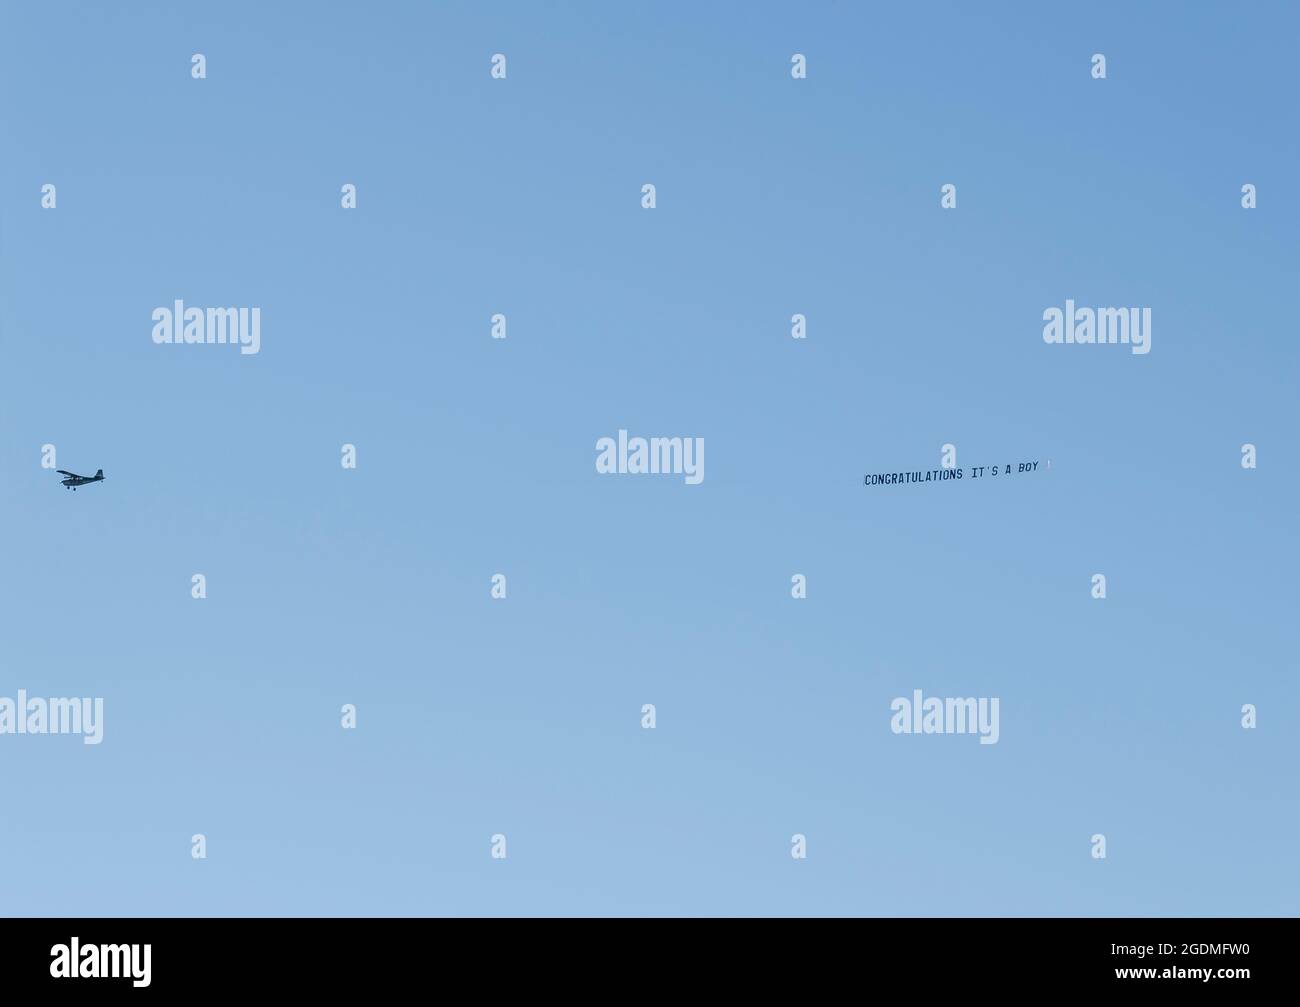 Of Simple Plain Backgrounds Premium Plane Backgrounds HD wallpaper | Pxfuel